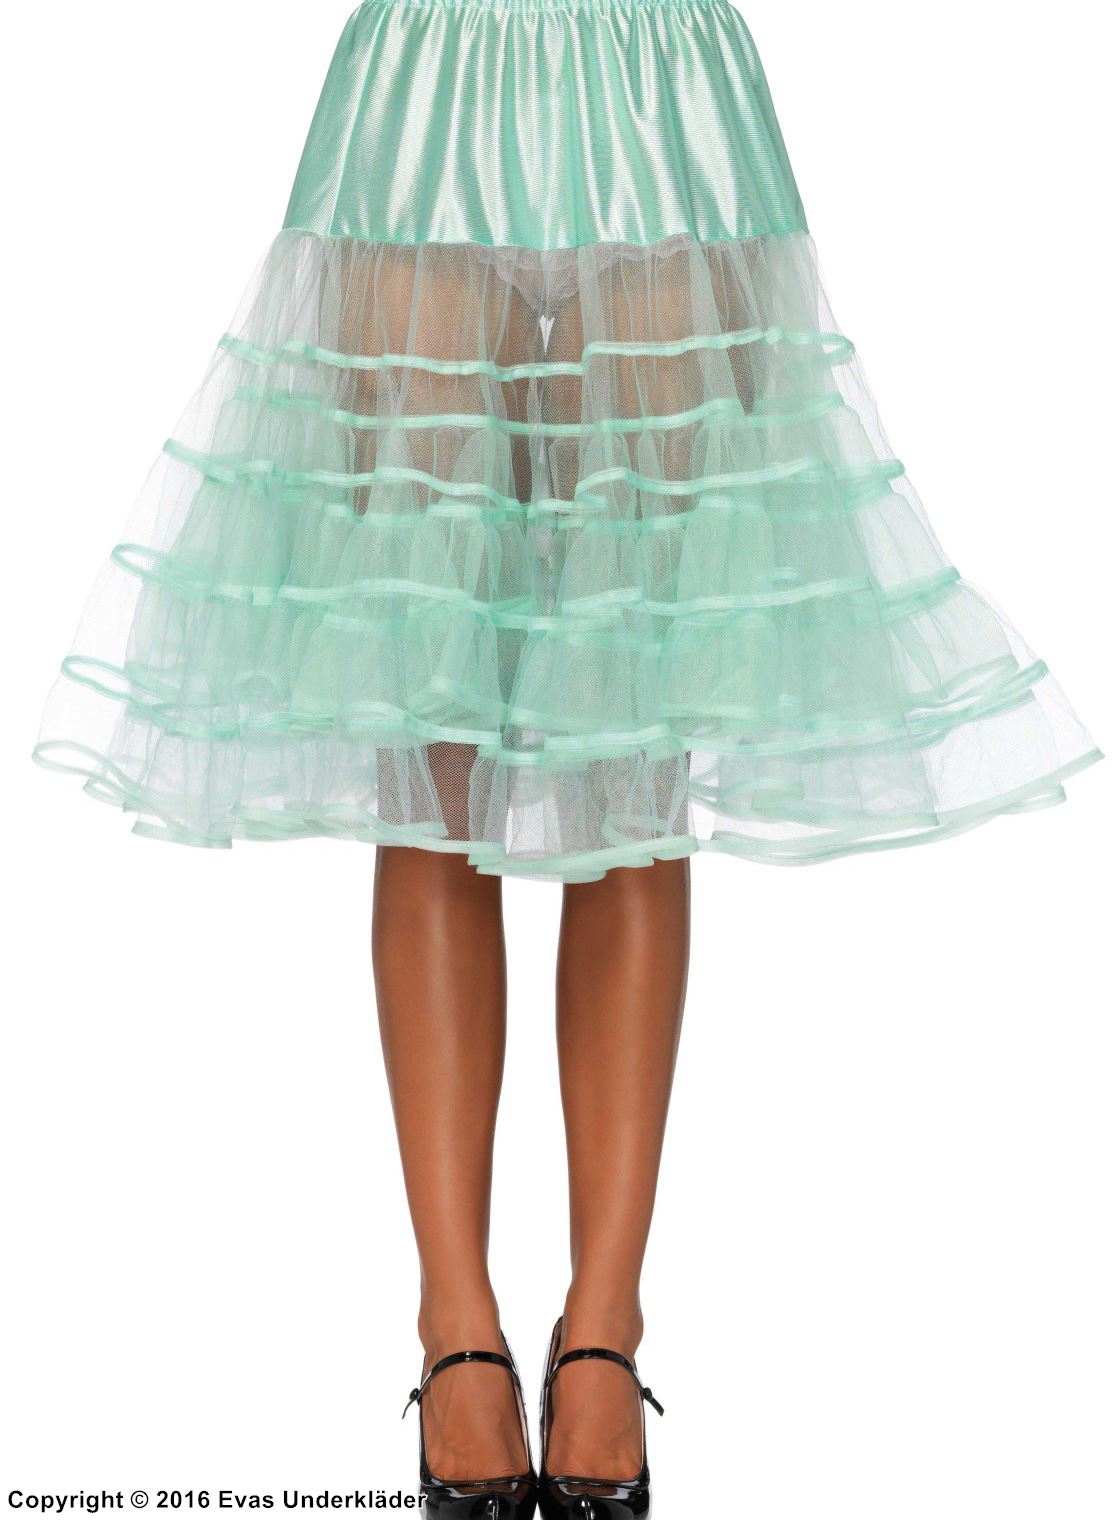 Petticoat, transparente Einlagen, Rüschen aus Mesh